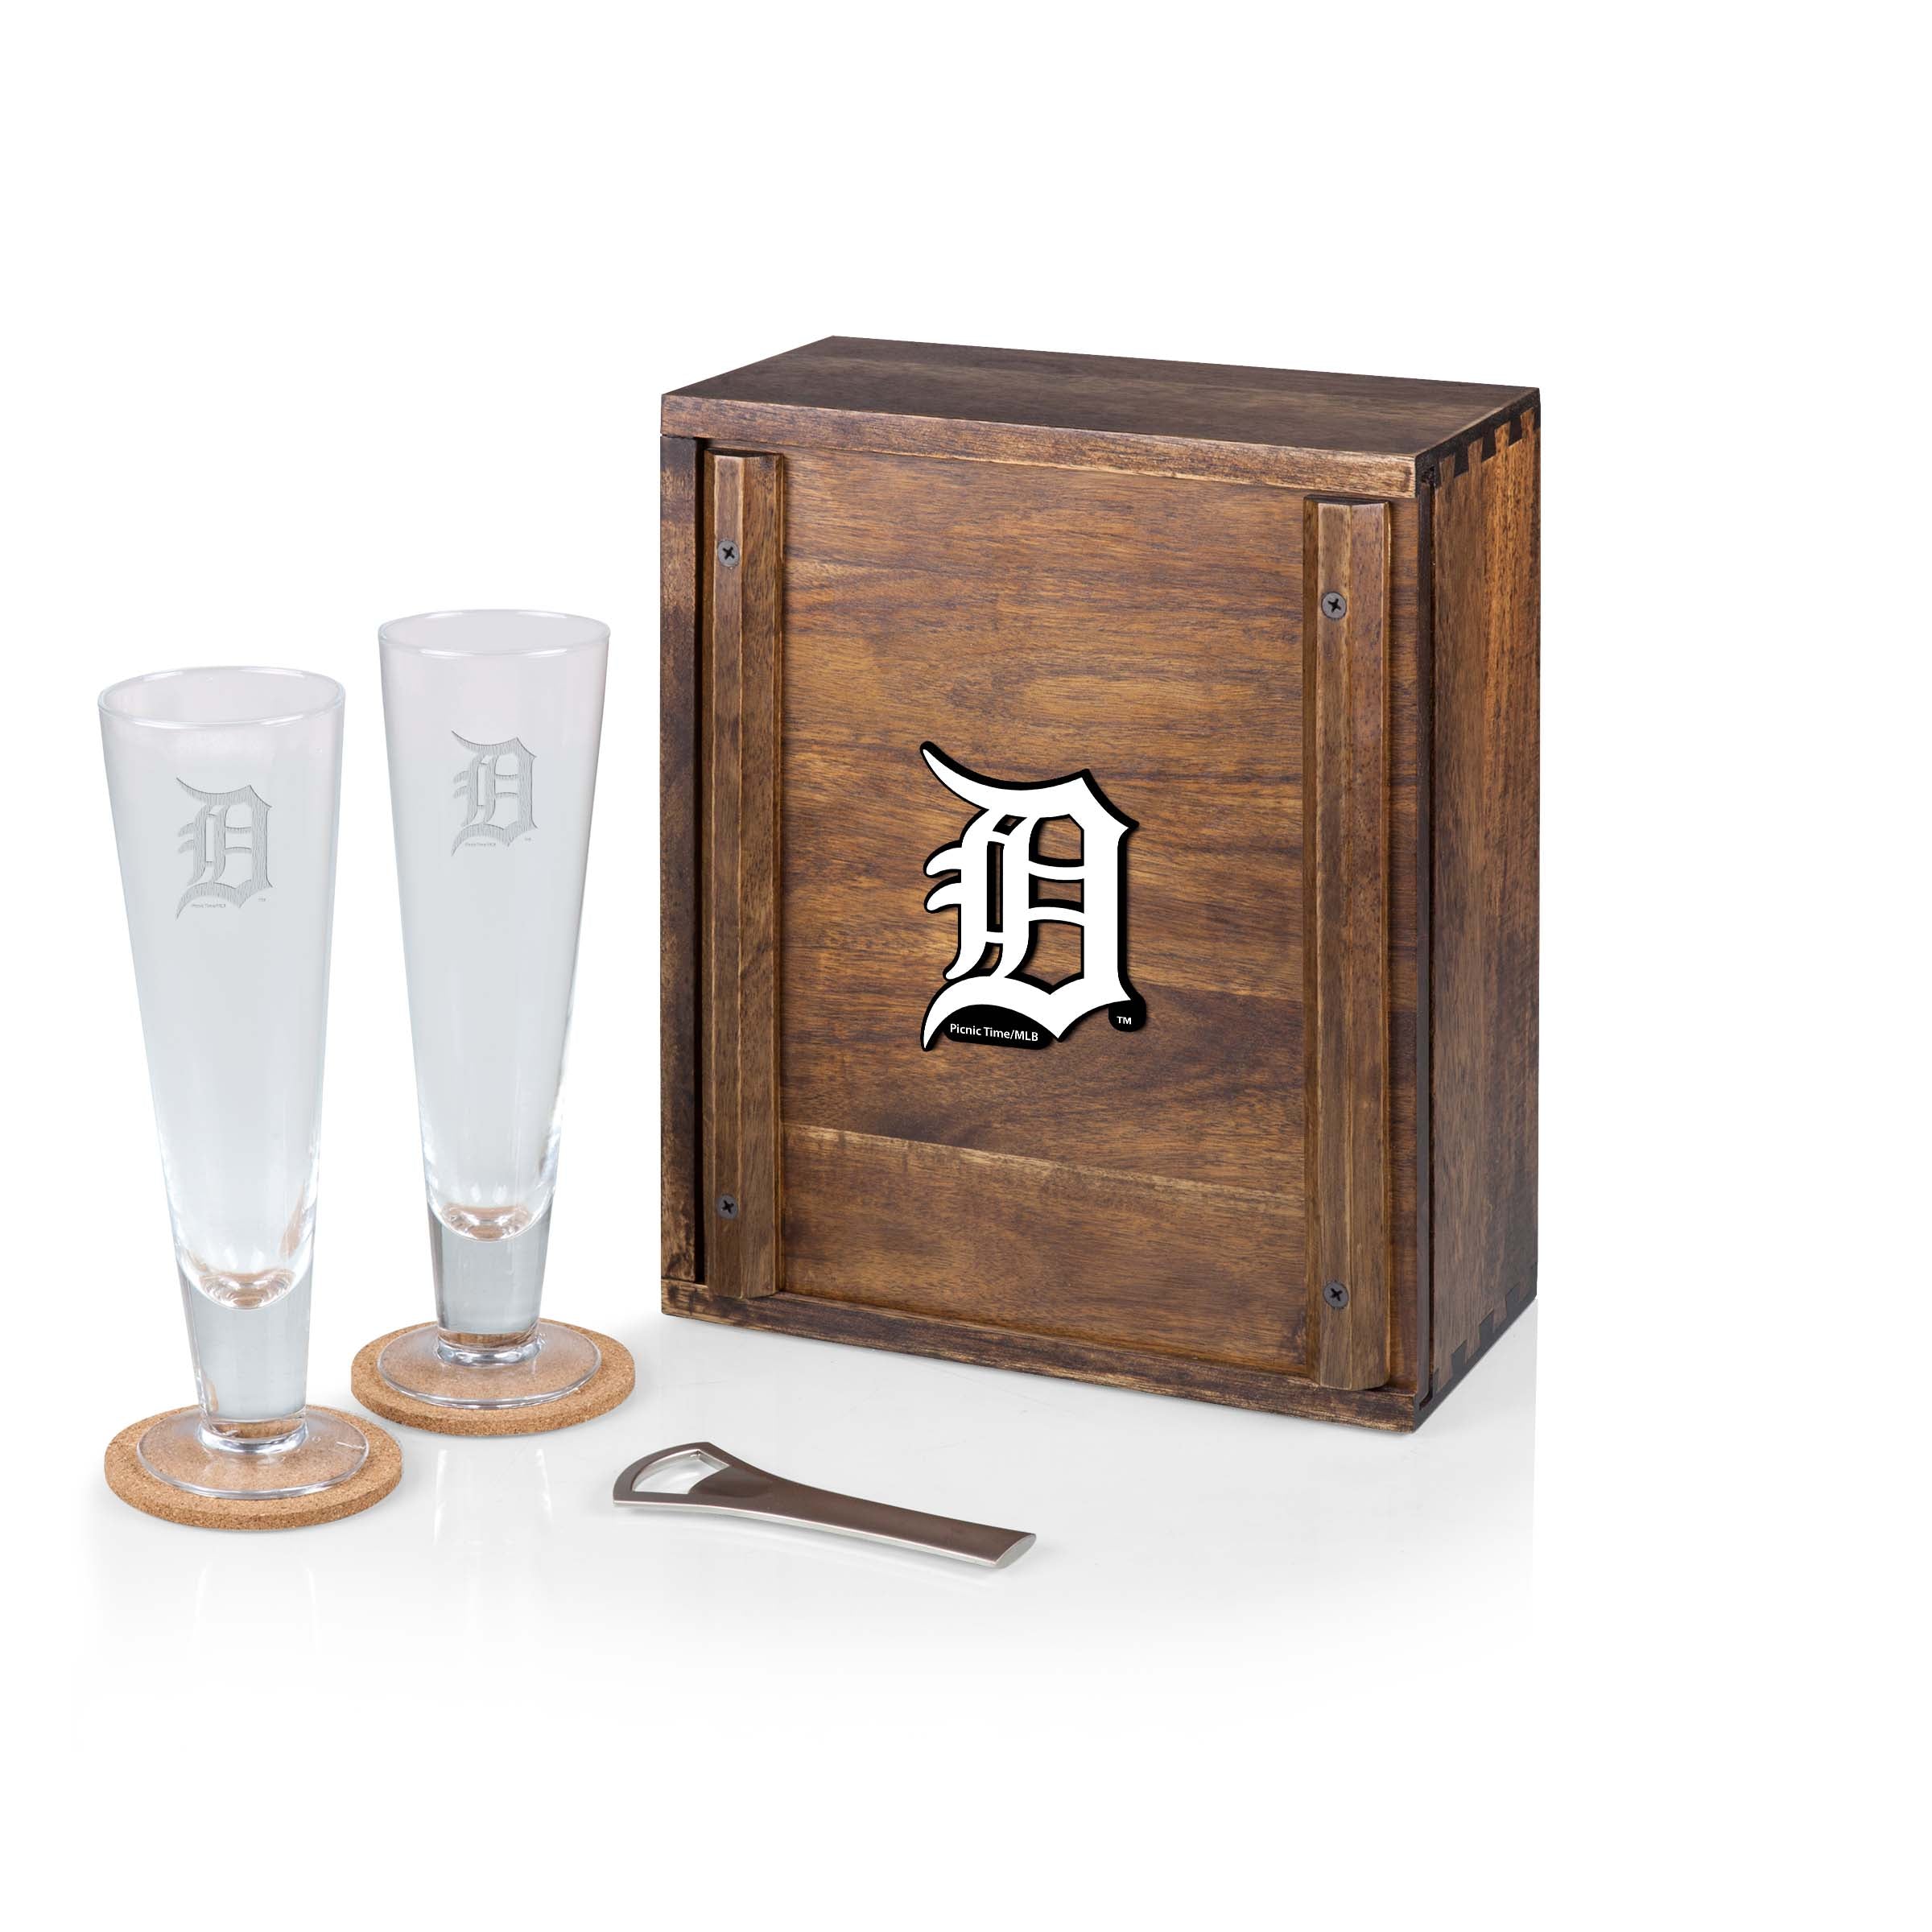 Detroit Tigers - Pilsner Beer Glass Gift Set